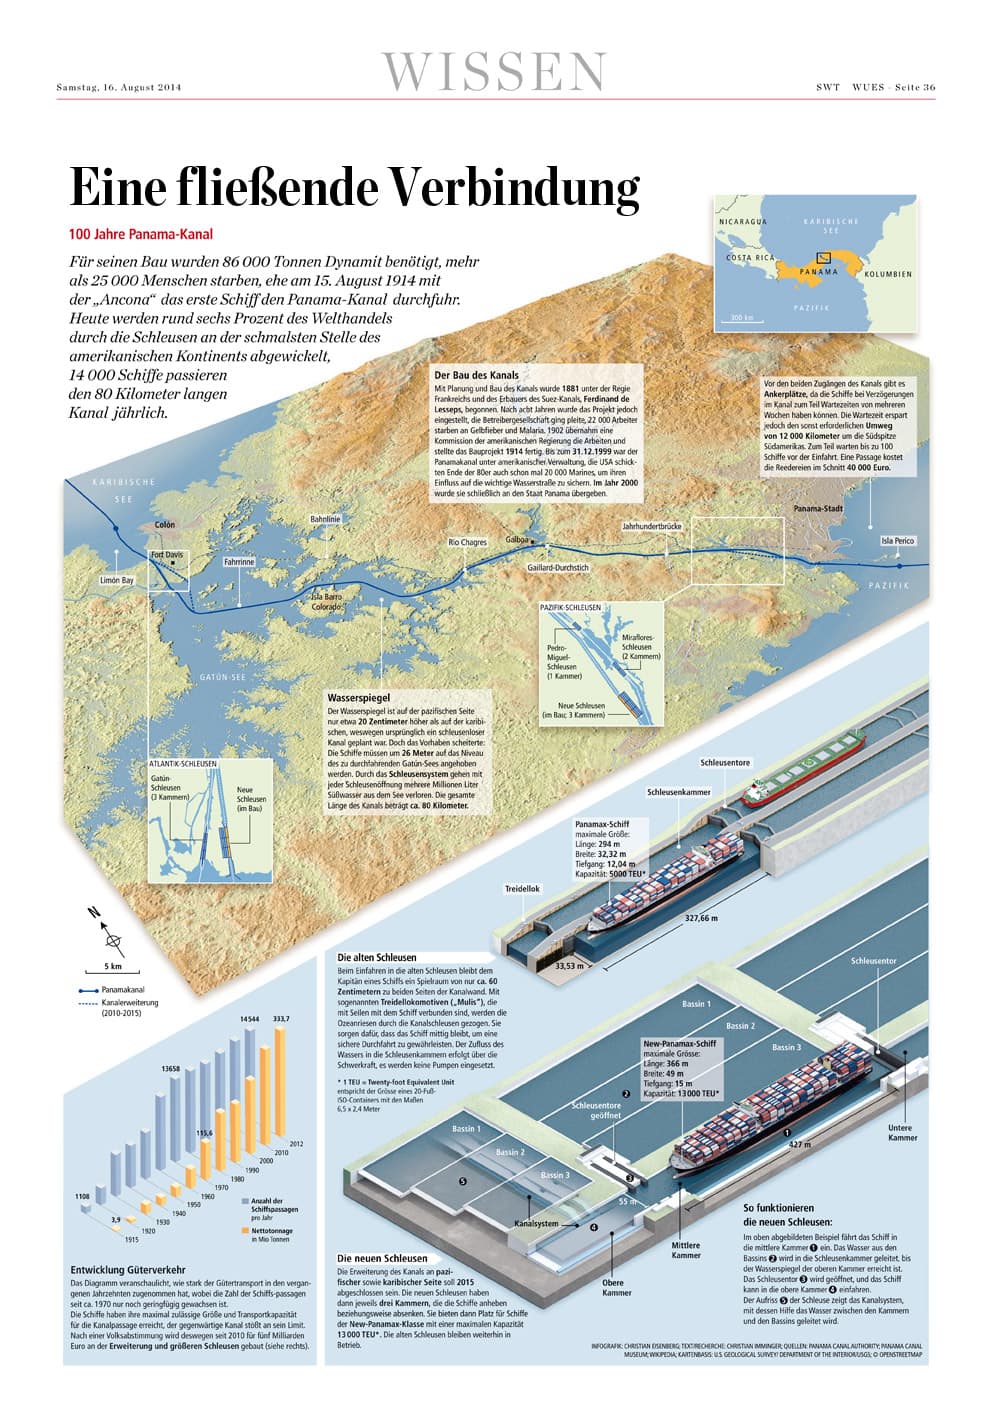 100 Jahre Panama-Kanal